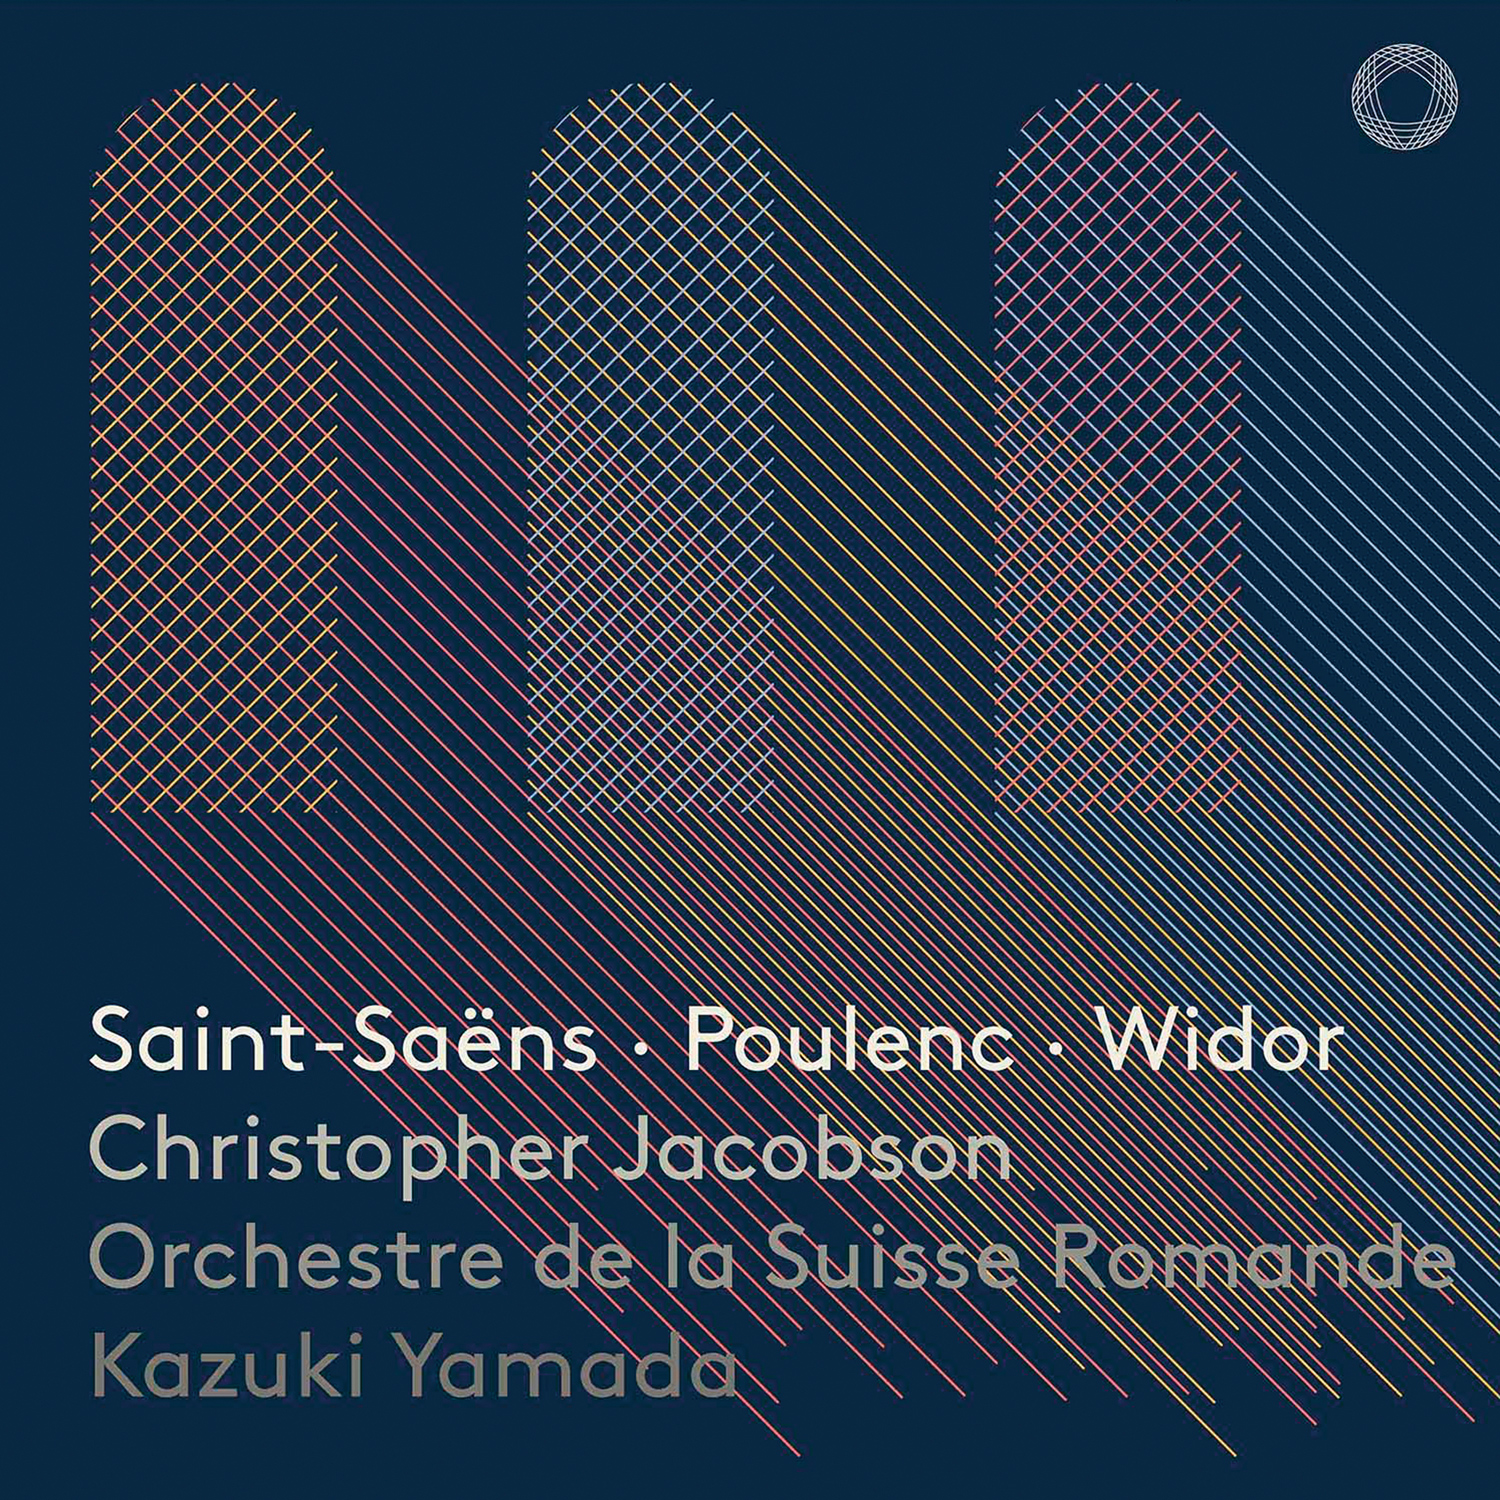 Christopher Jacobson, Orchestre de la Suisse Romande, Kazuki Yamada – Saint-Saëns, Poulenc, Widor: Works for Organ (2019) DSF DSD256 + Hi-Res FLAC